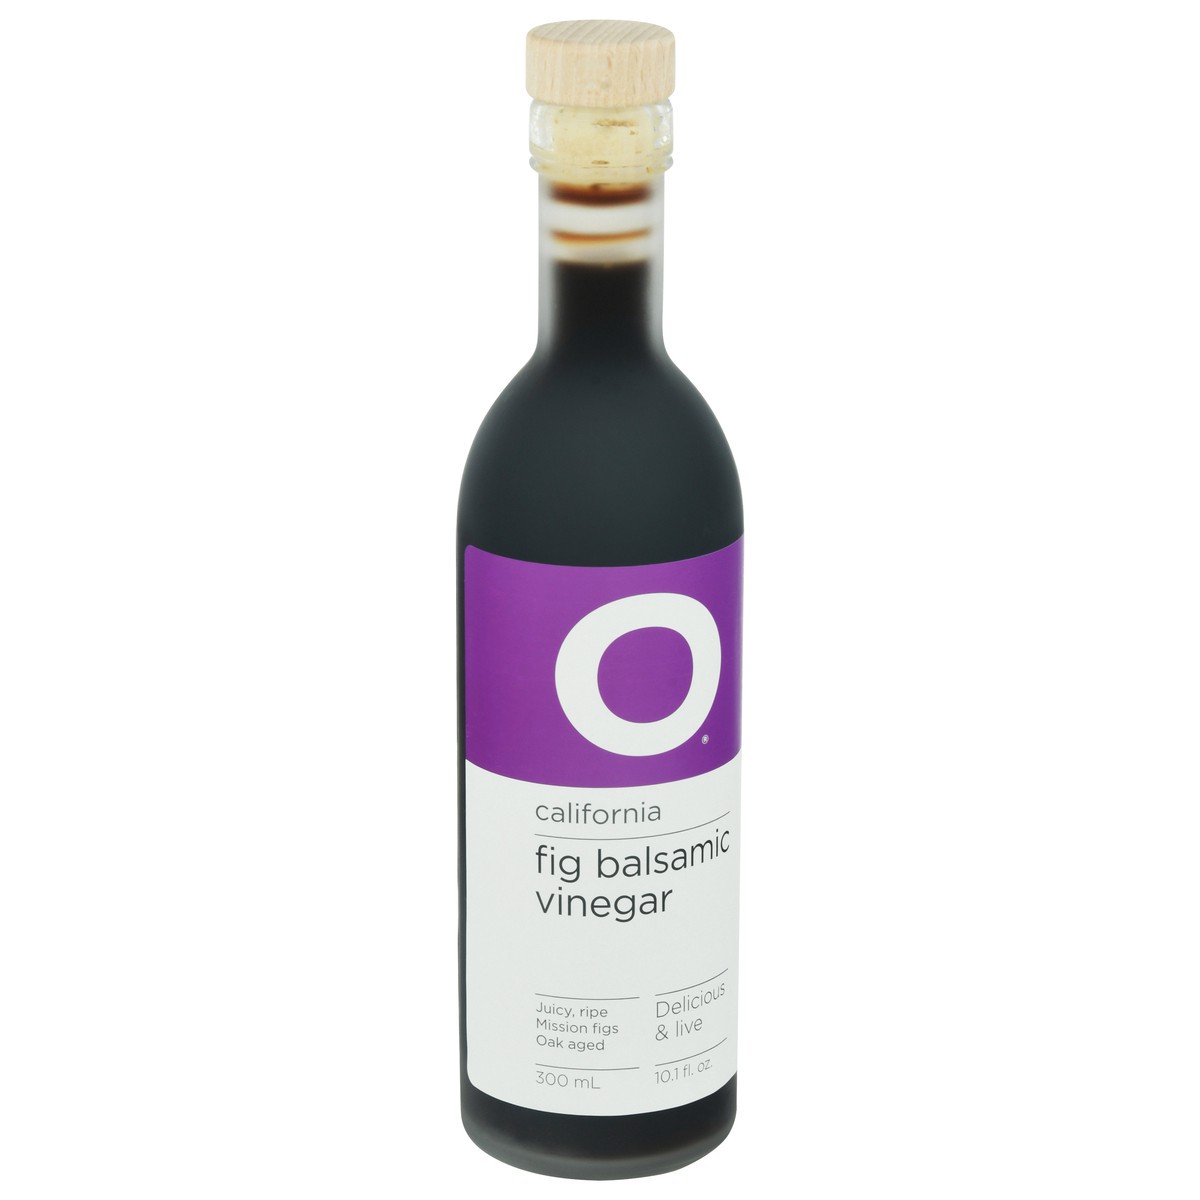 slide 4 of 14, O Vinegar Balsamic Fig Cali, 300 ml